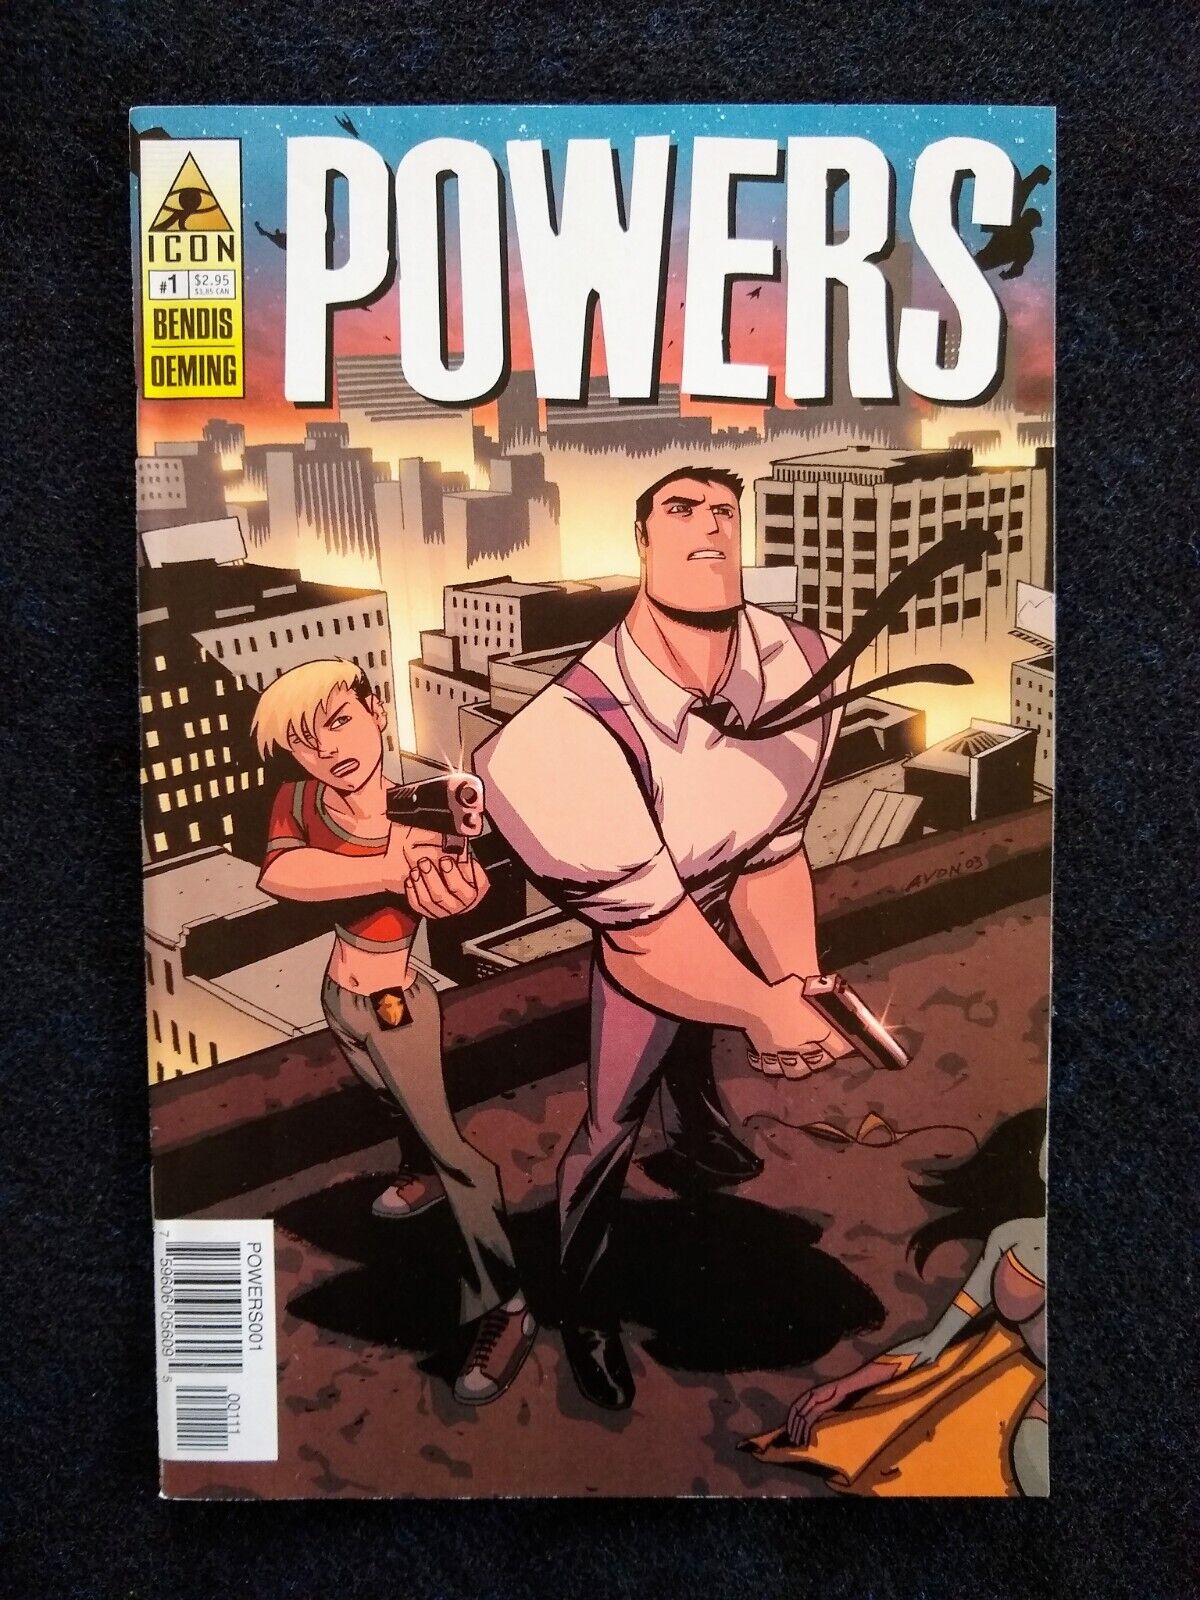 Powers #1 Vol 2 Image Comic Book 2004 Brian Michael Bendis, Mike Avon Oeming.